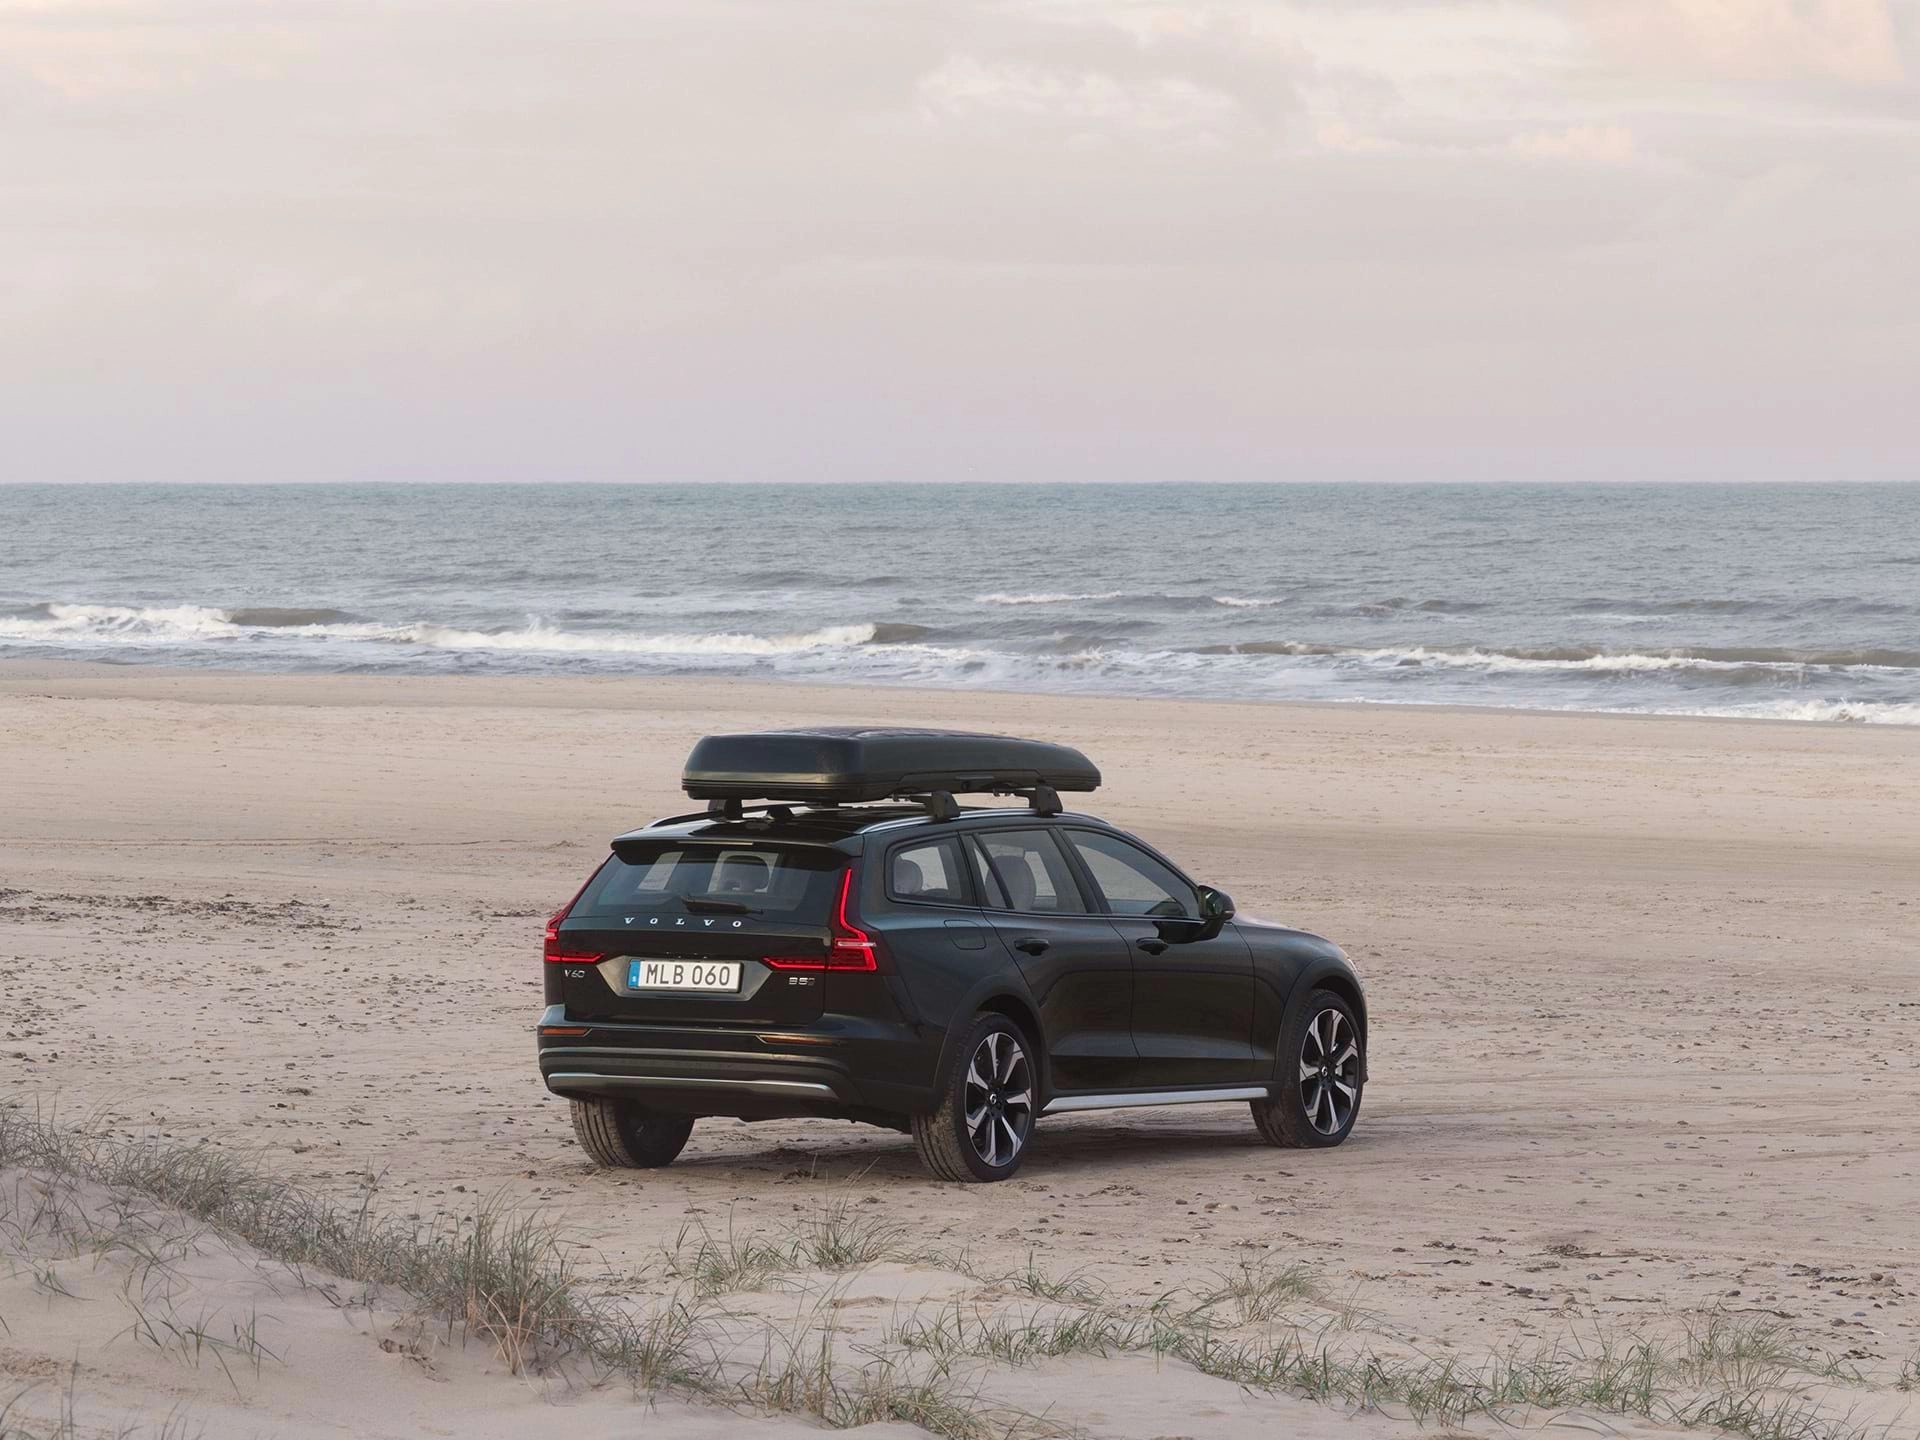 Une familiale Volvo équipée d'un coffre de toit, garée sur une plage de sable.